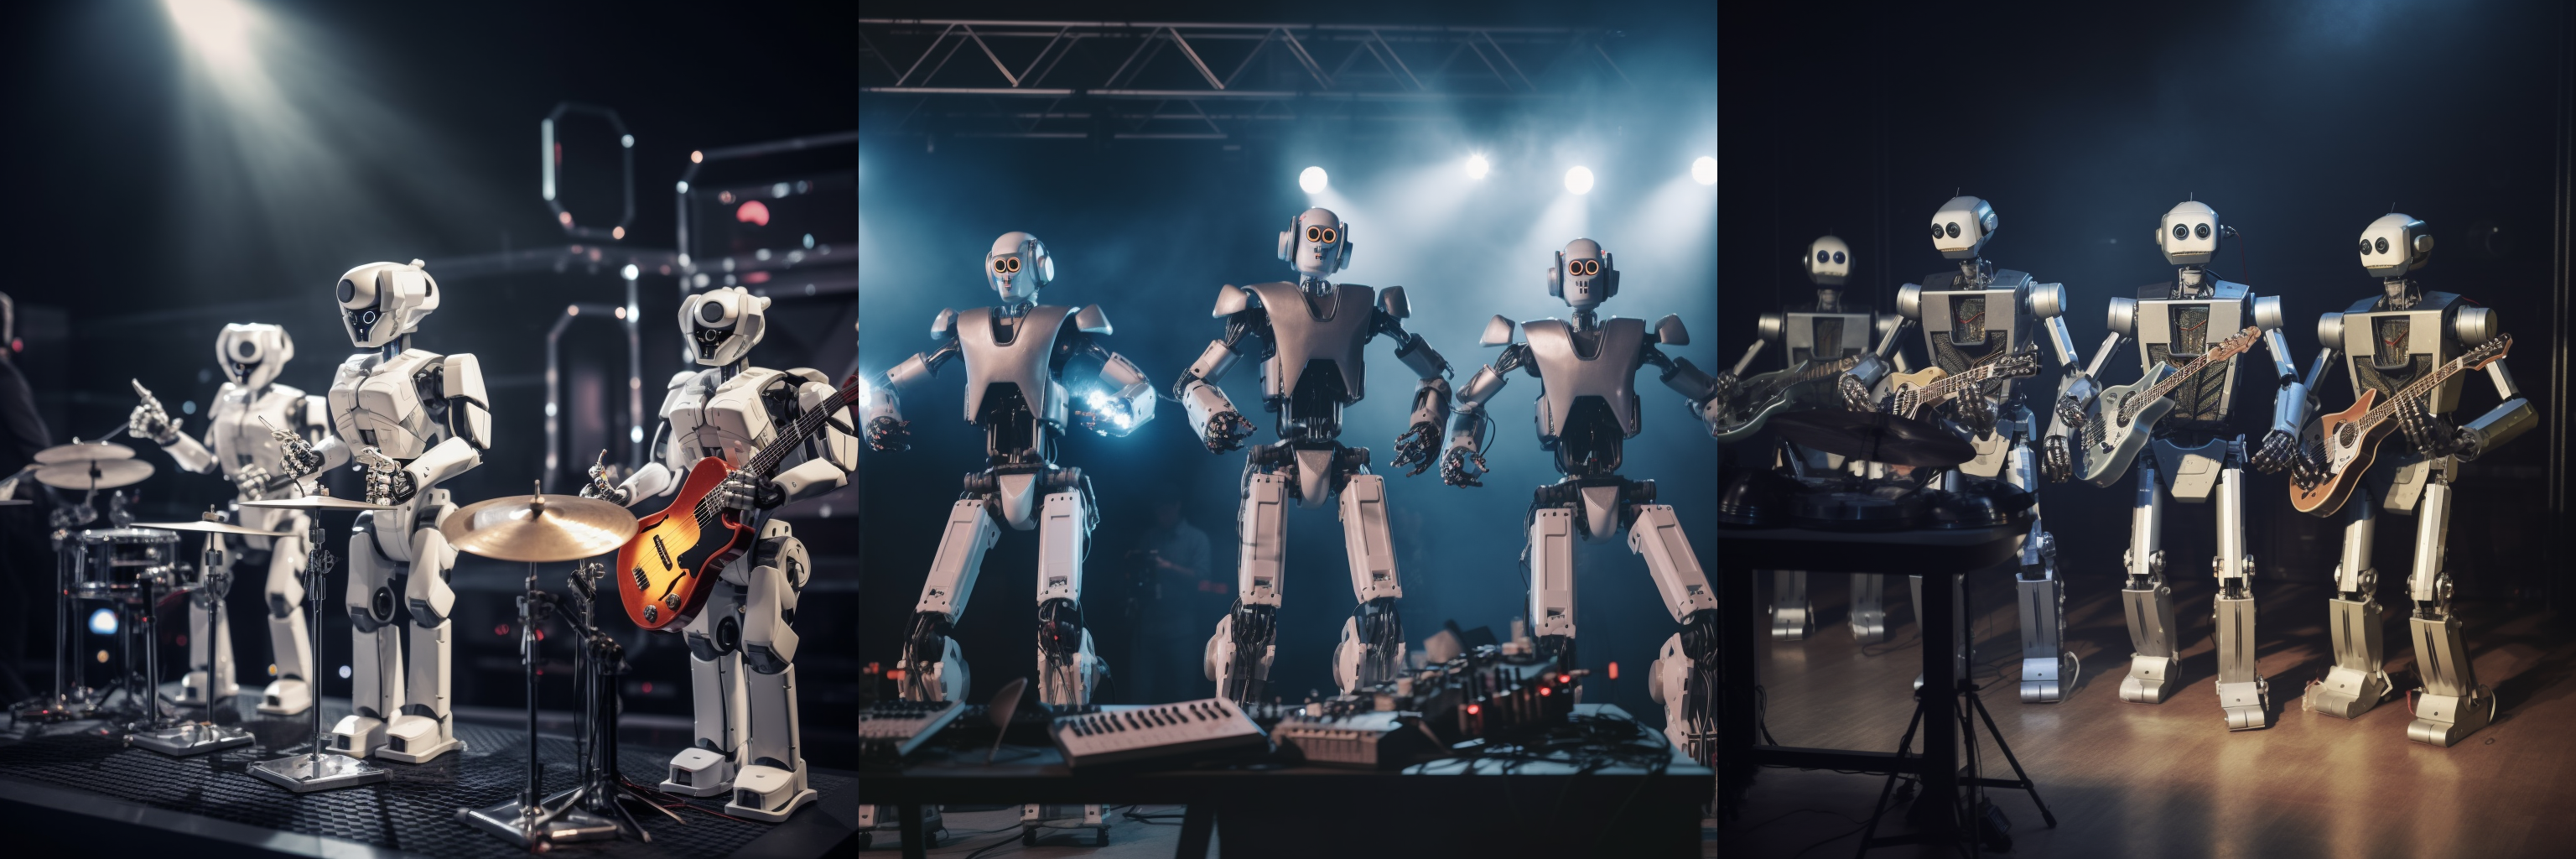 Drei KI-generierte Bilder von Robotern, die ein Konzert spielen.